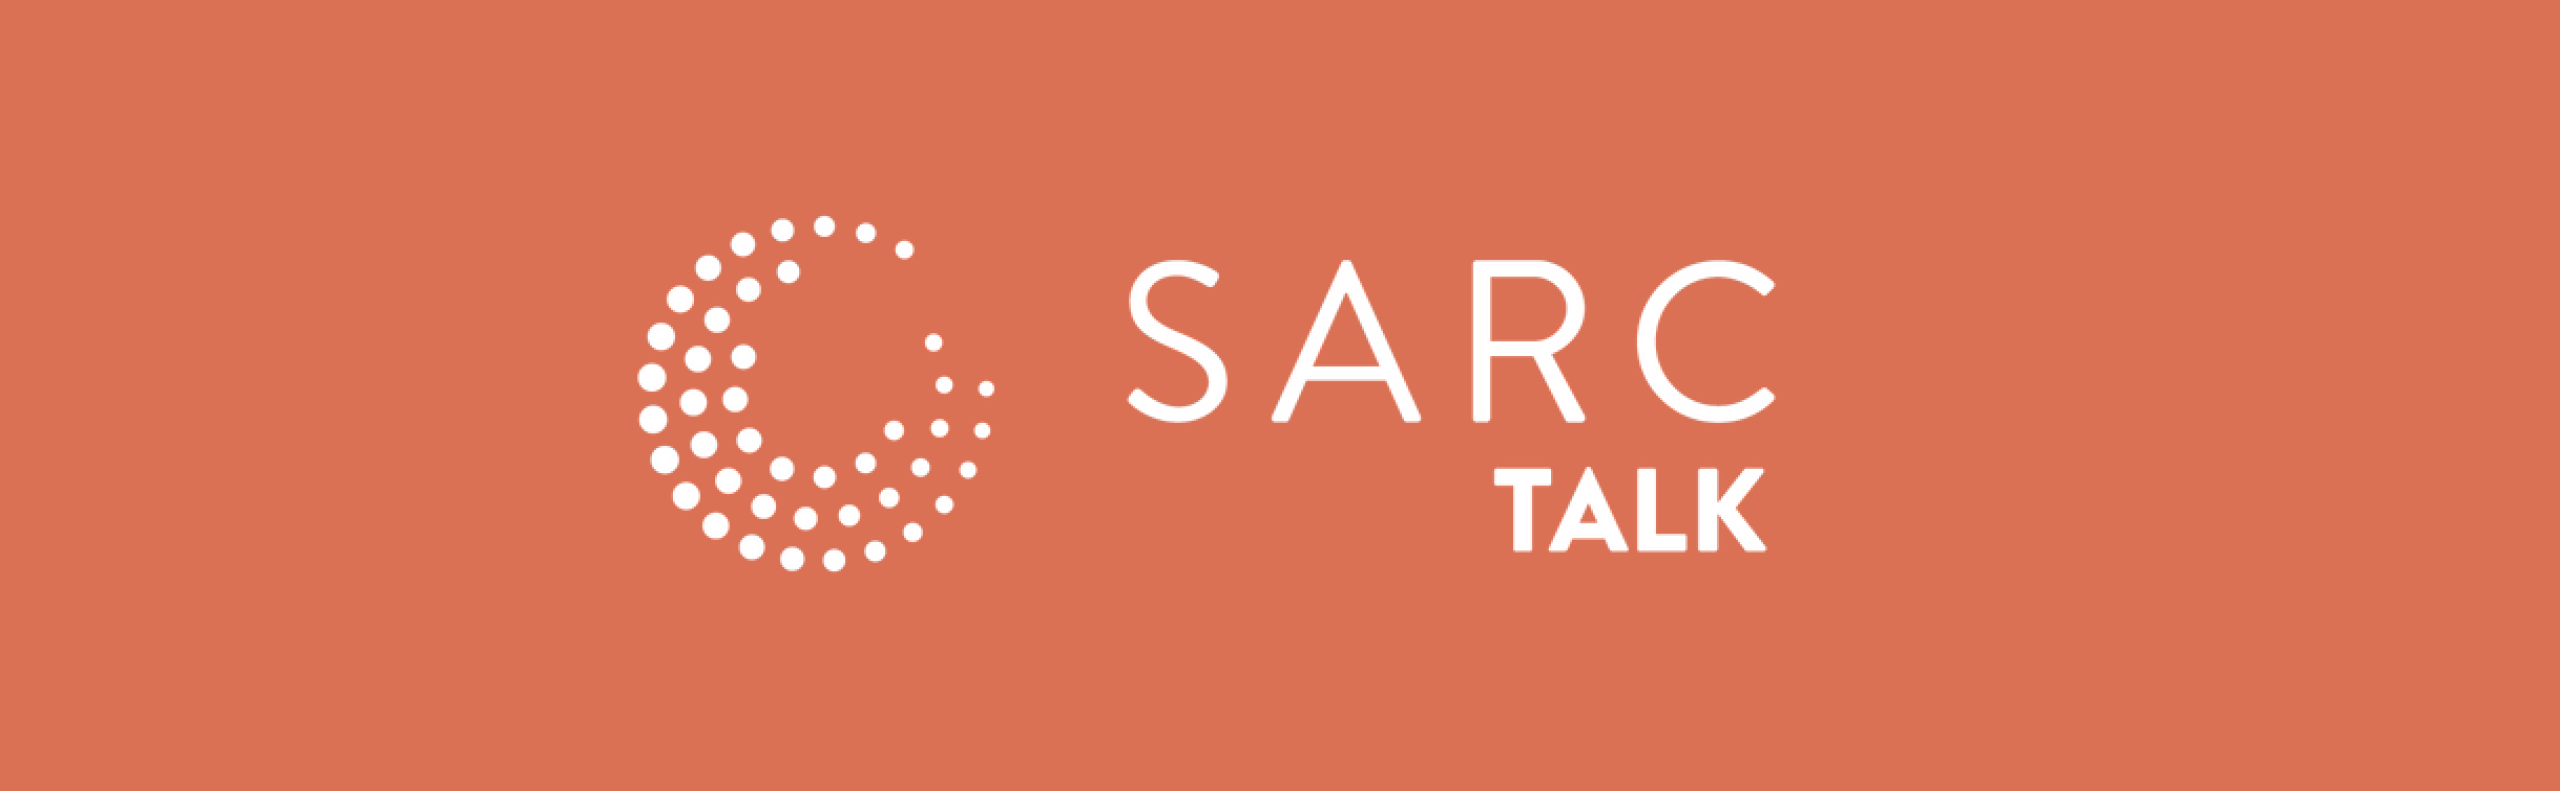 SARC Talk History